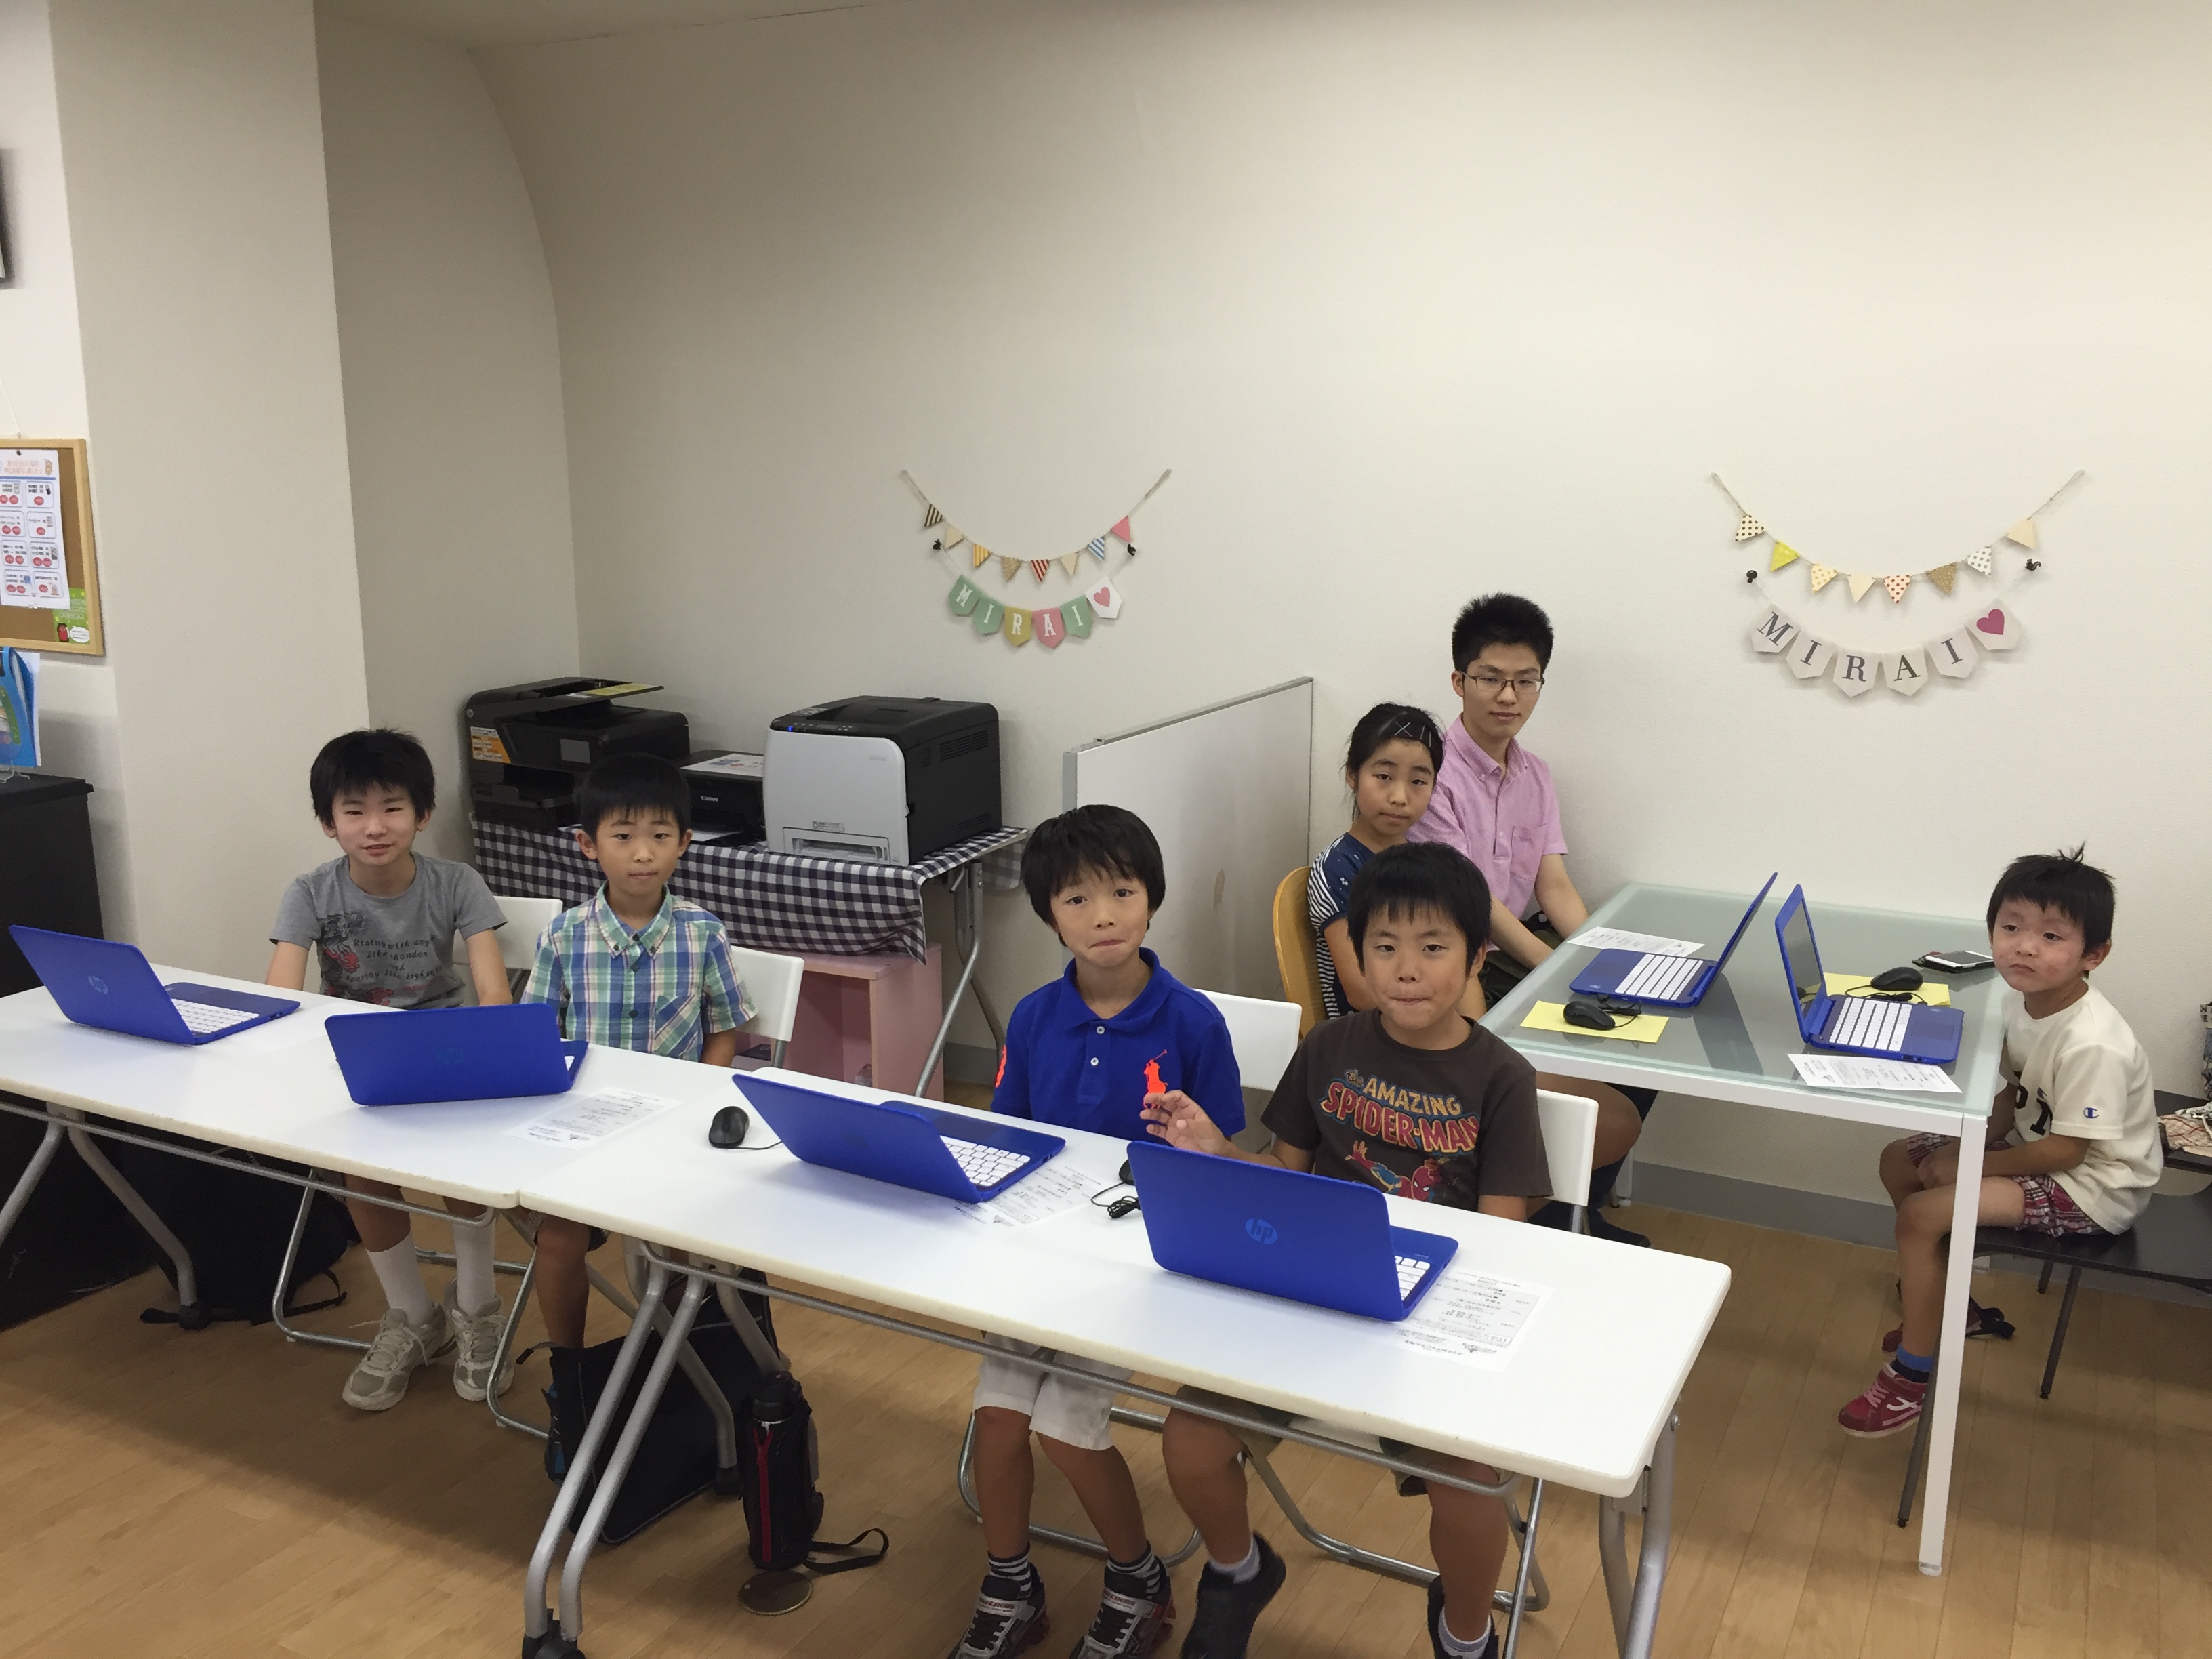 【Kids Go Tech】Scratchプログラミング講座